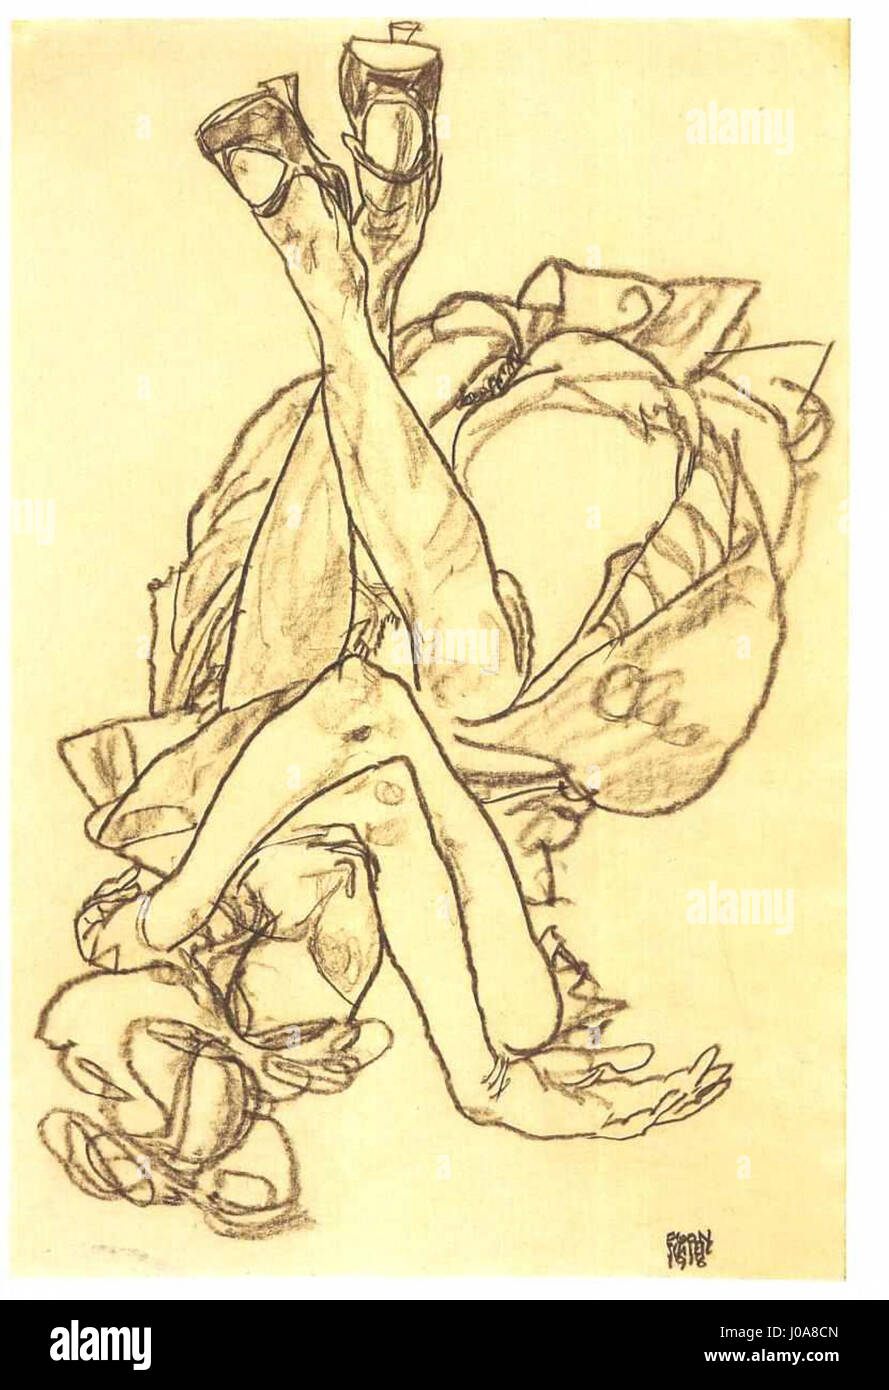 Schiele - Am Rücken liegendes Mädchen mit überkreuzten Armen und Beinen - 1918 Foto Stock